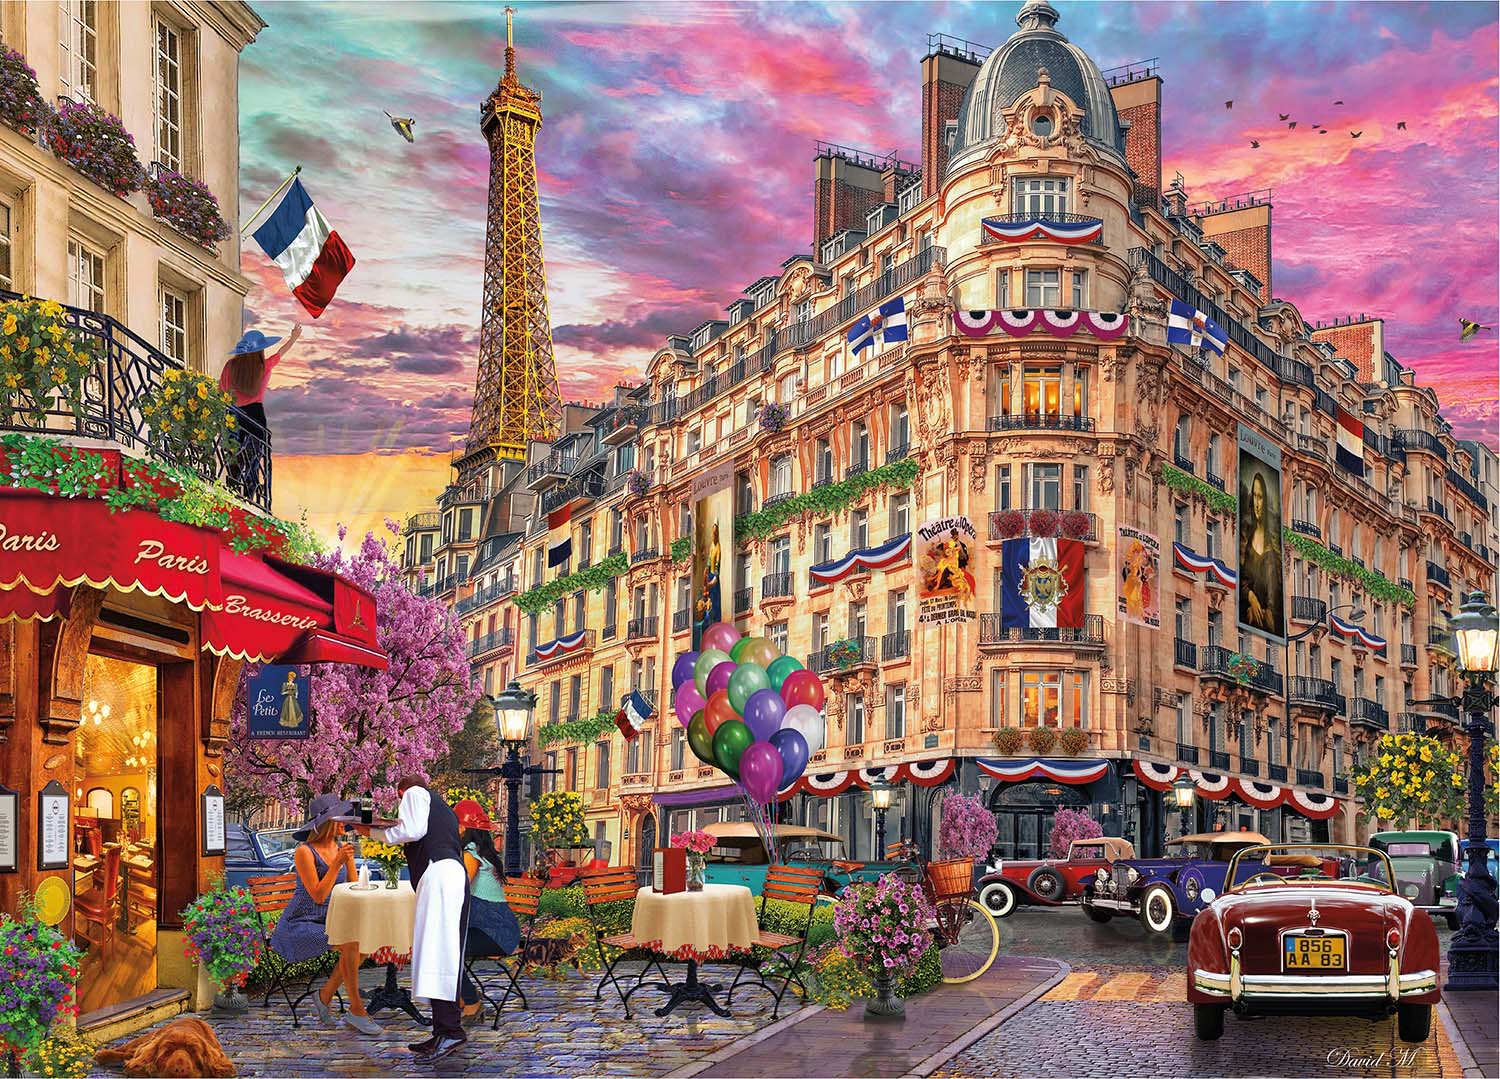 Cities Bonjour Paris Paris & France Jigsaw Puzzle